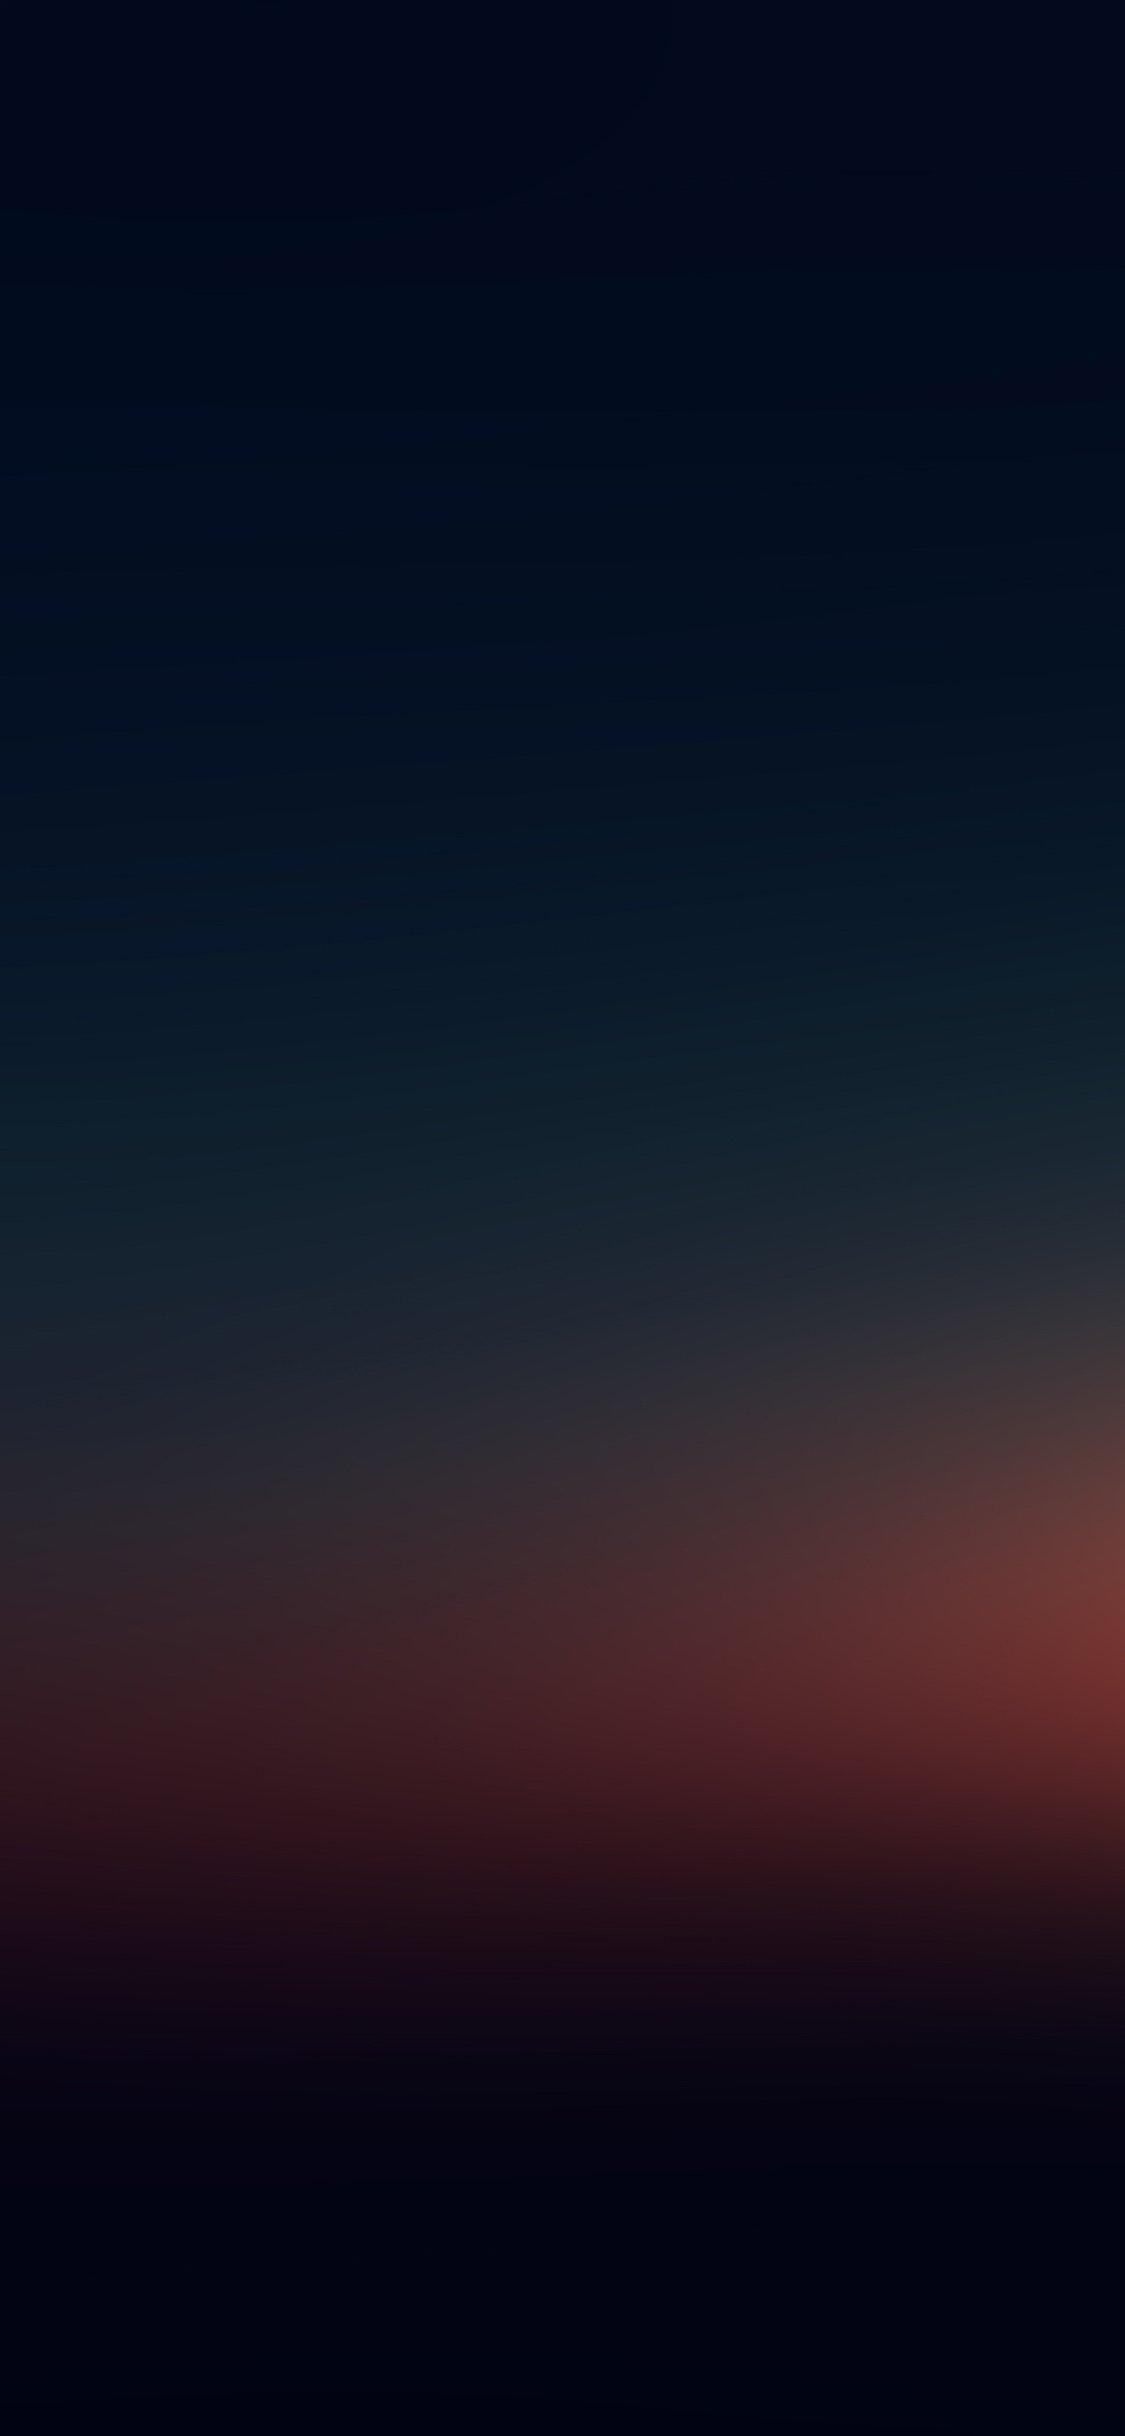 iPhone wallpaper. blur sunset night blur